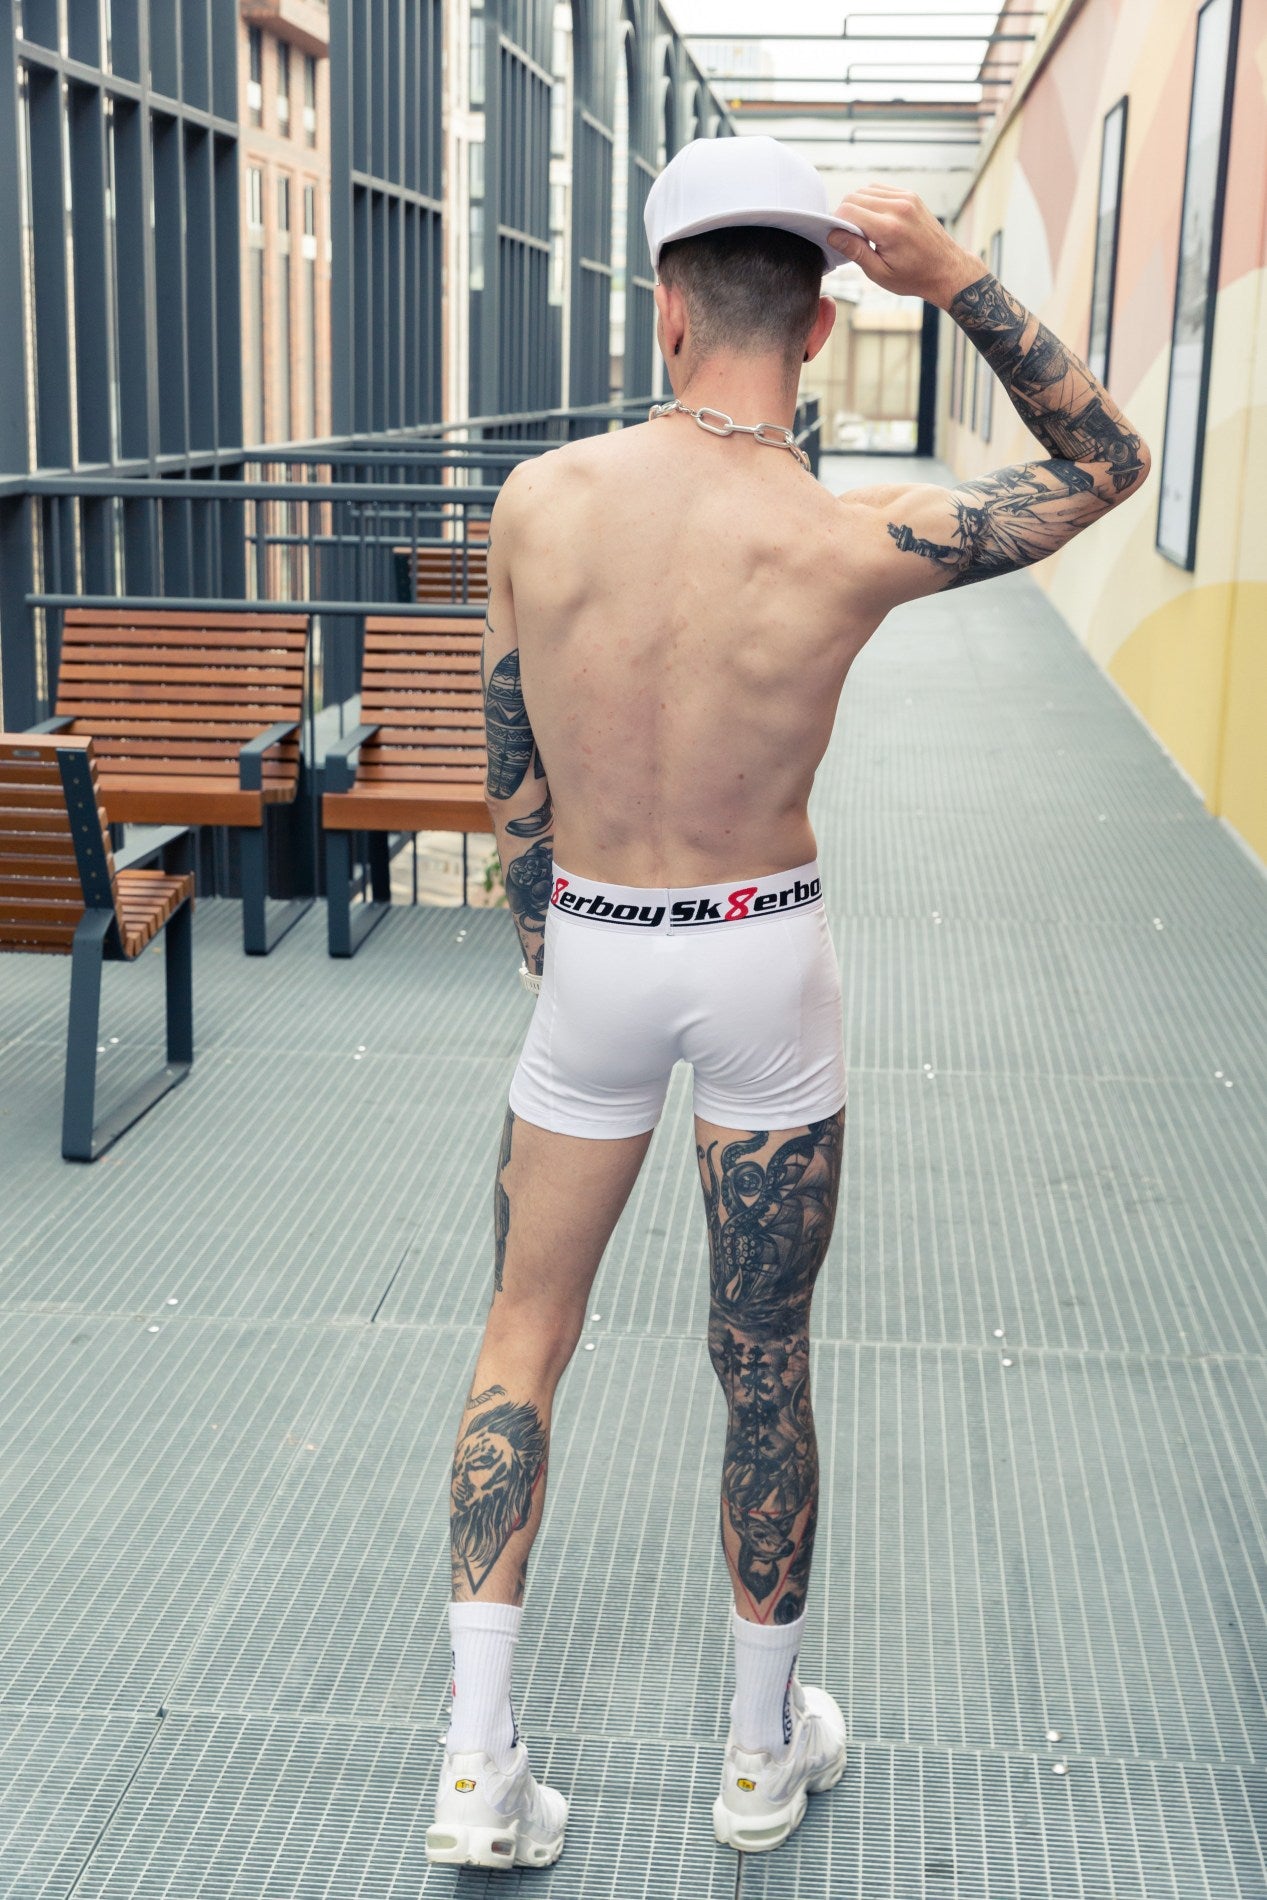 sportlicher junge von hinten mit freiem oberkörper trägt eine weisse boxershort von sk8erboy mit logo auf dem bund und passenden crew socks in weissen nike tn turnschuhen mit kappe